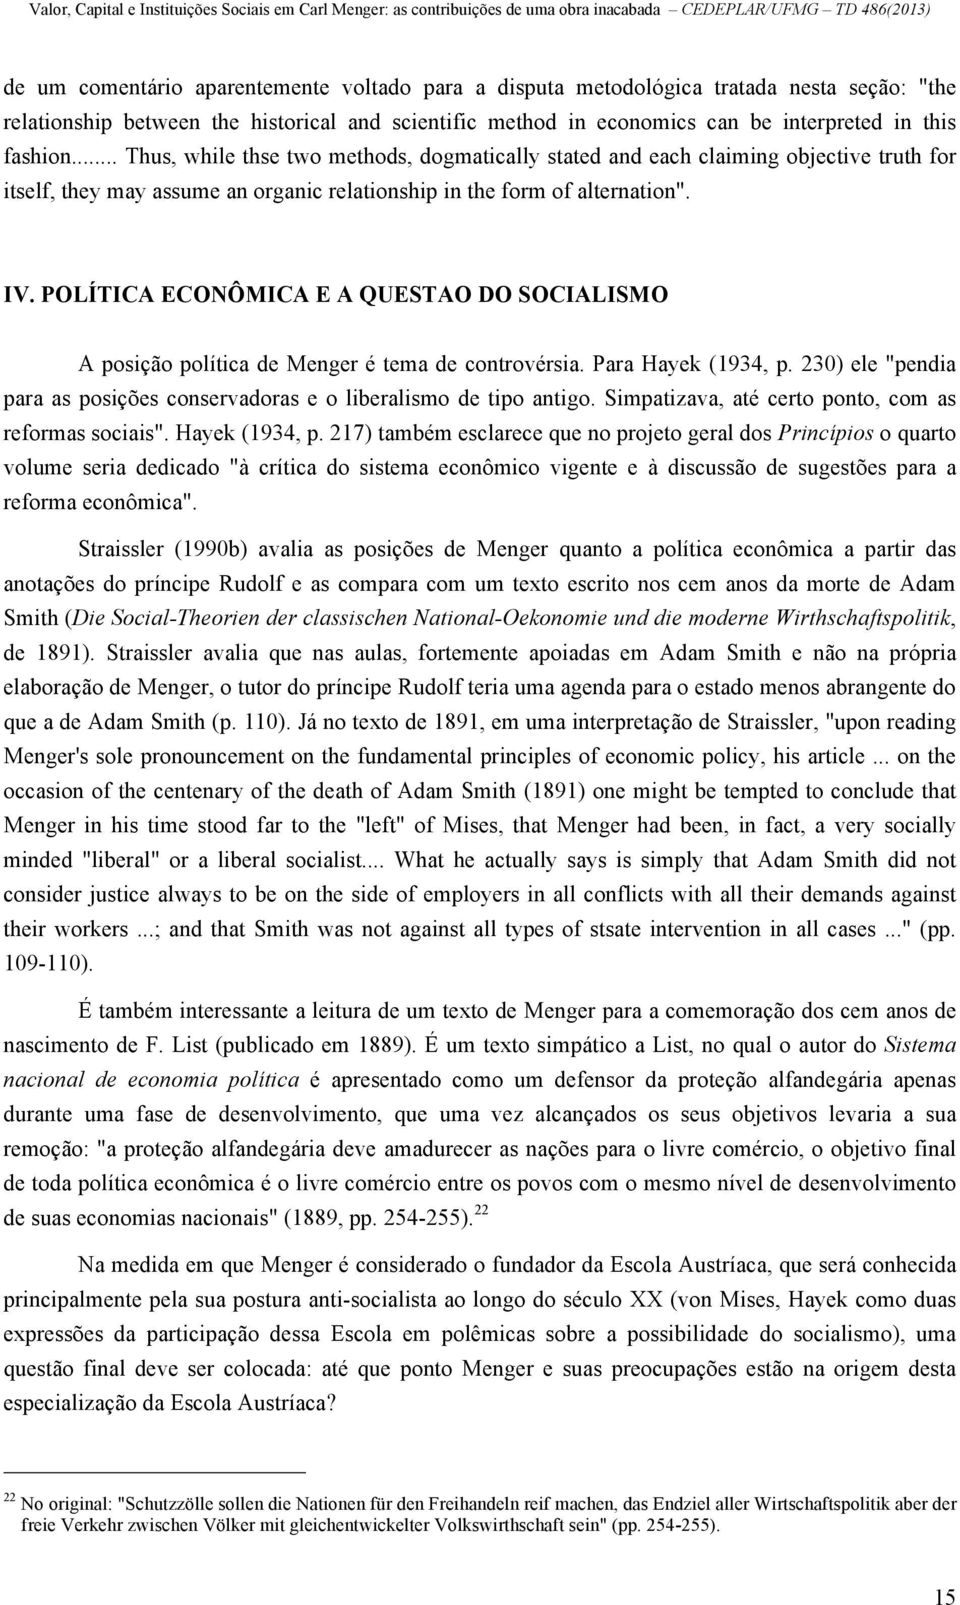 POLÍTICA ECONÔMICA E A QUESTAO DO SOCIALISMO A posição política de Menger é tema de controvérsia. Para Hayek (1934, p. 230) ele "pendia para as posições conservadoras e o liberalismo de tipo antigo.